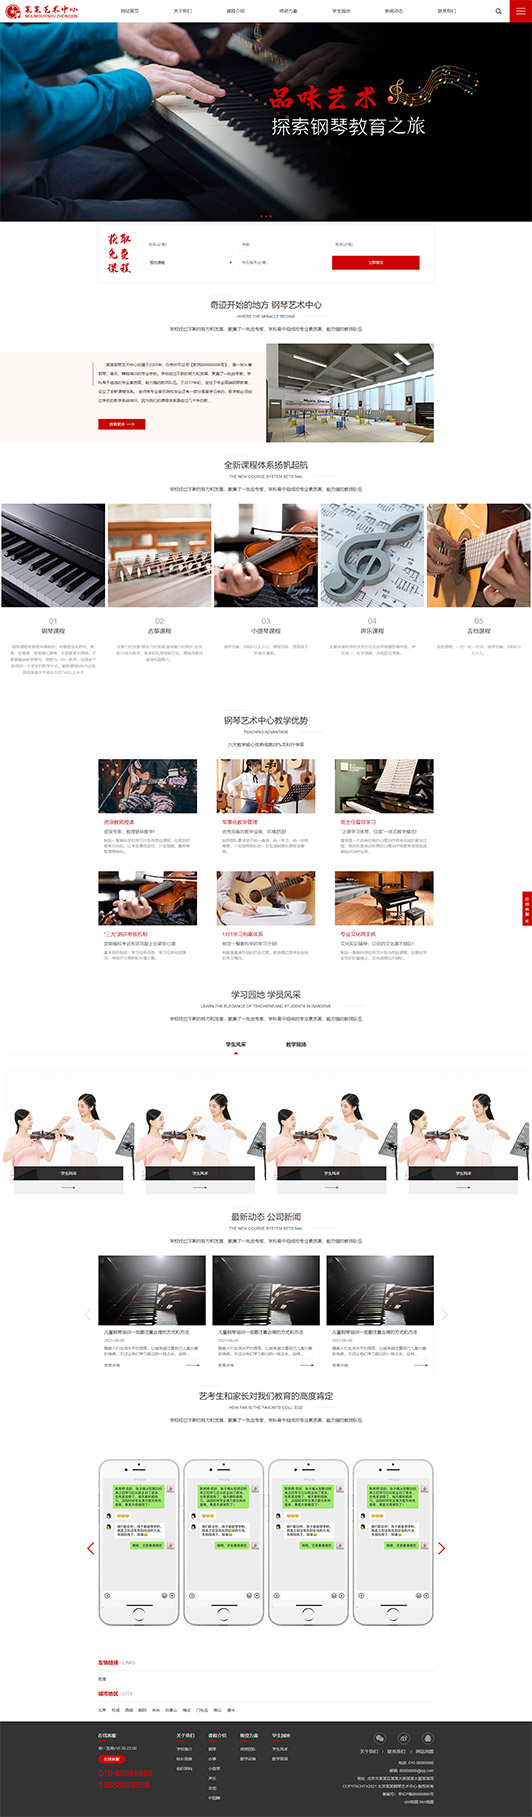 阳江钢琴艺术培训公司响应式企业网站